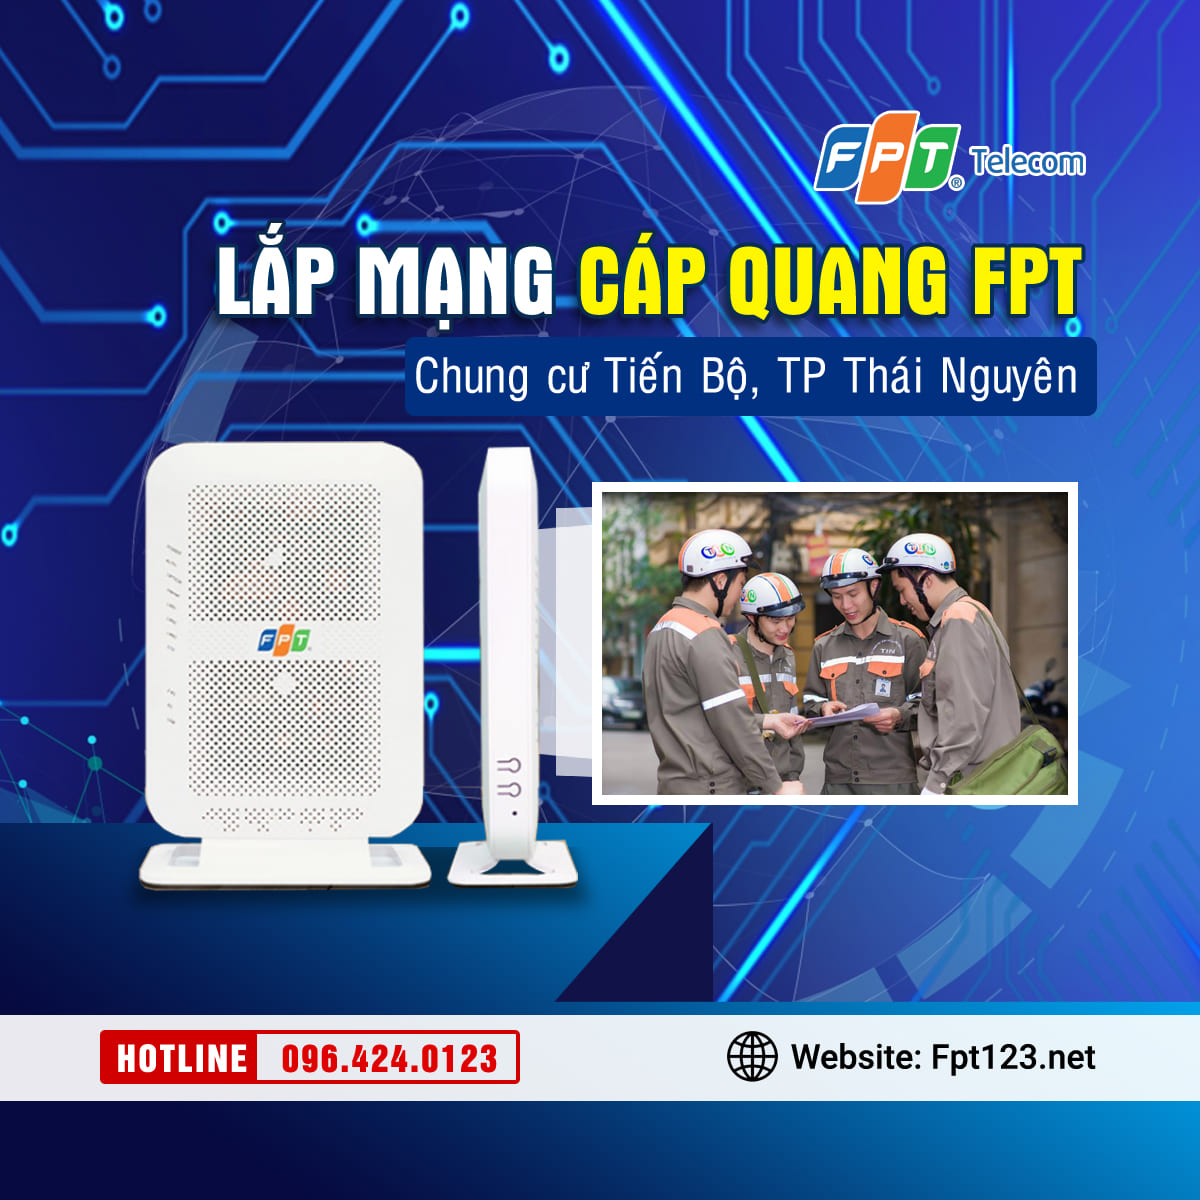 Lắp đặt cáp quang FPT ở chung cư Tiến Bộ, TP Thái Nguyên